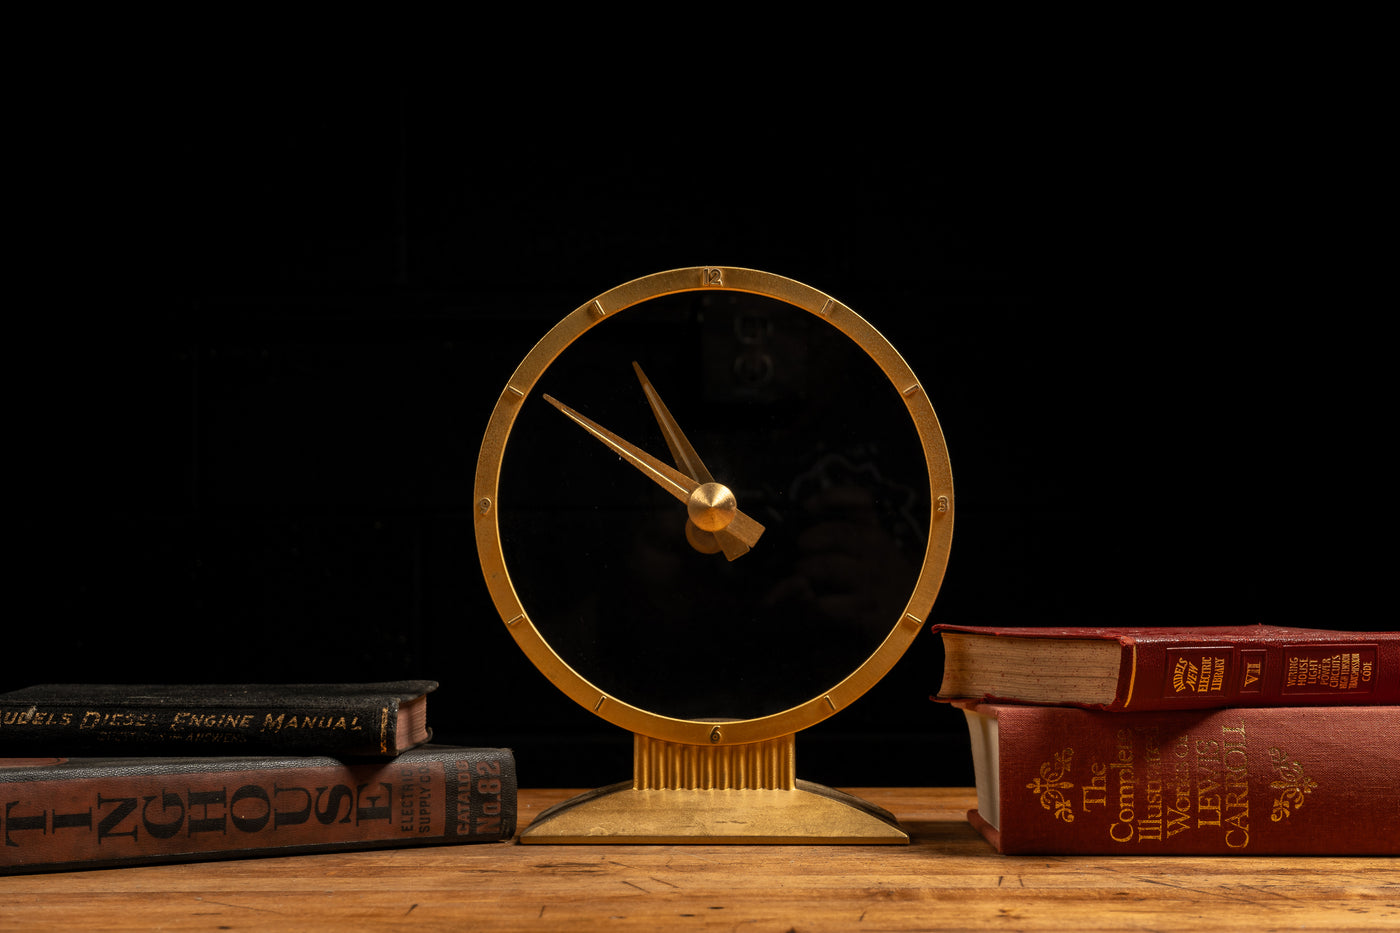 Art Deco Golden Hour Electric Clock